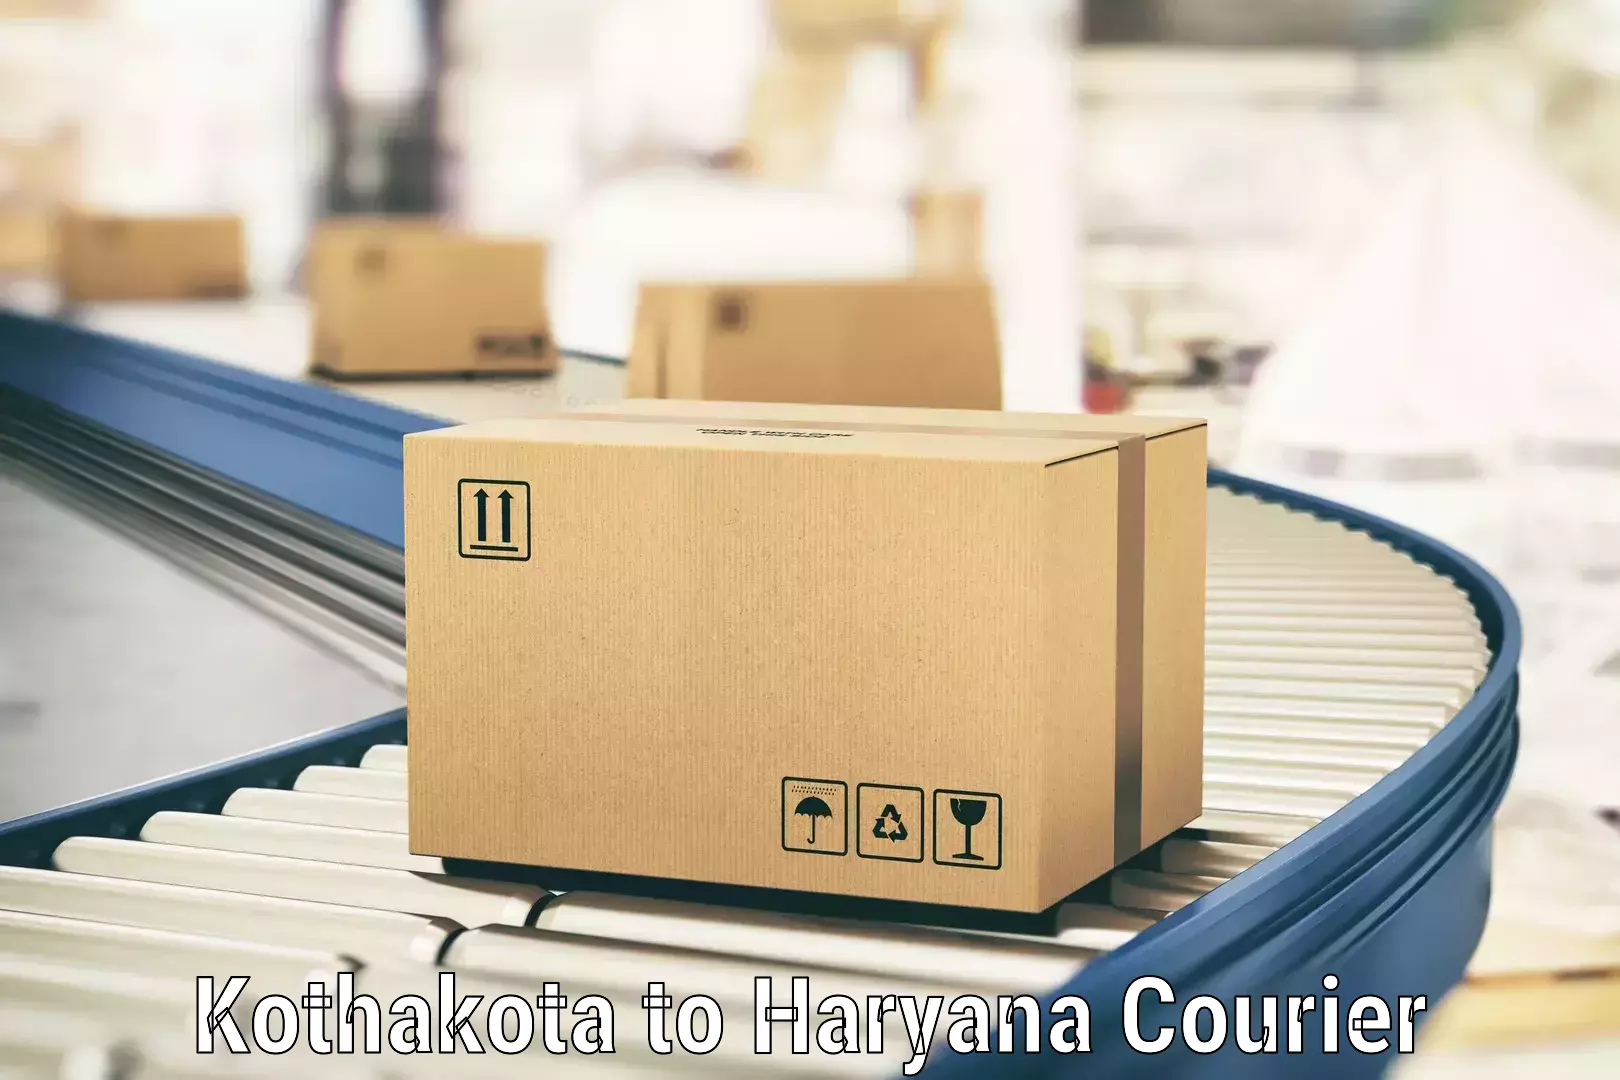 On-demand shipping options Kothakota to Chaudhary Charan Singh Haryana Agricultural University Hisar